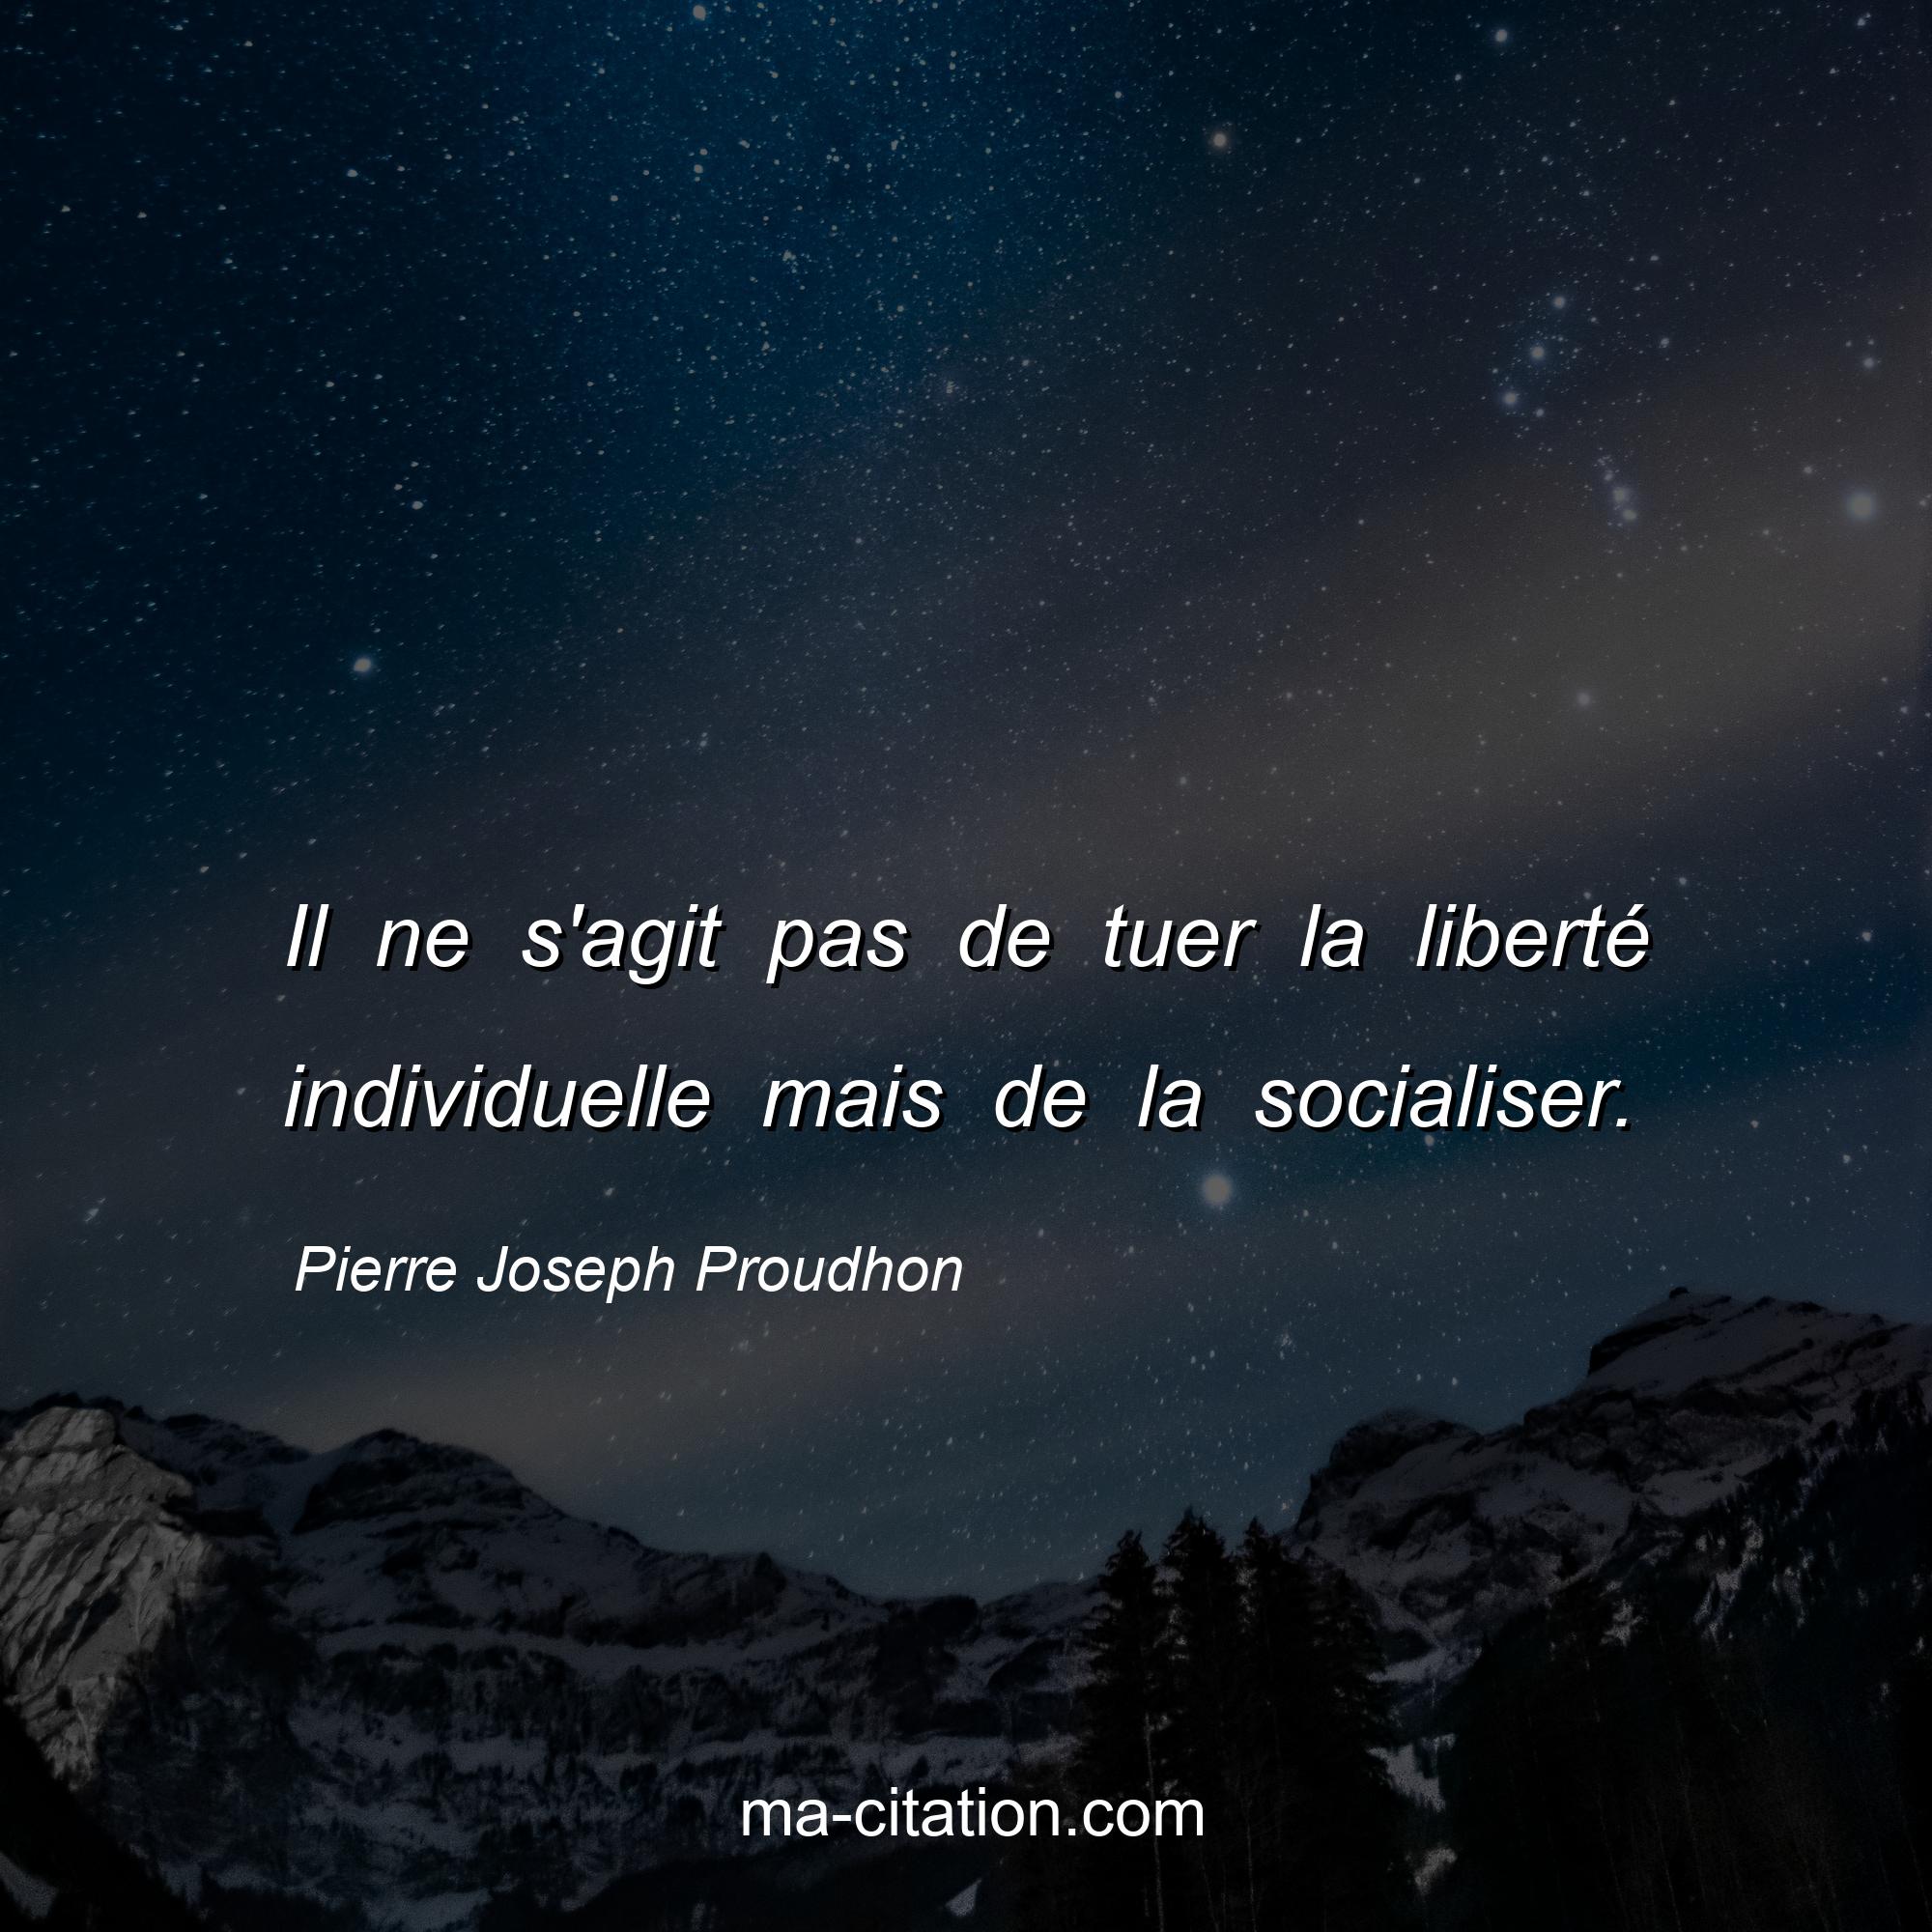 Pierre Joseph Proudhon : Il ne s'agit pas de tuer la liberté individuelle mais de la socialiser.